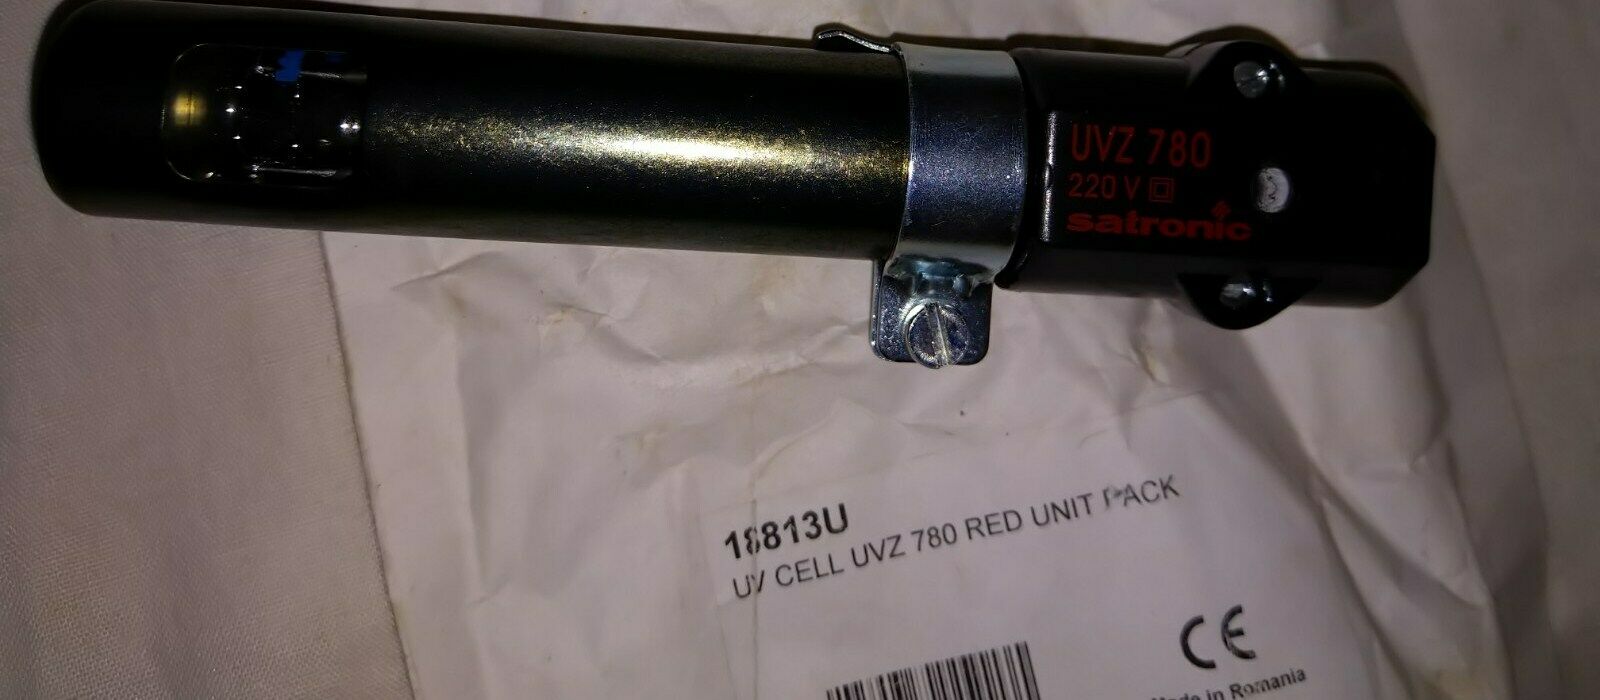 Satronic UVZ 780 红色火焰探测器霍尼韦尔代码 18813u 